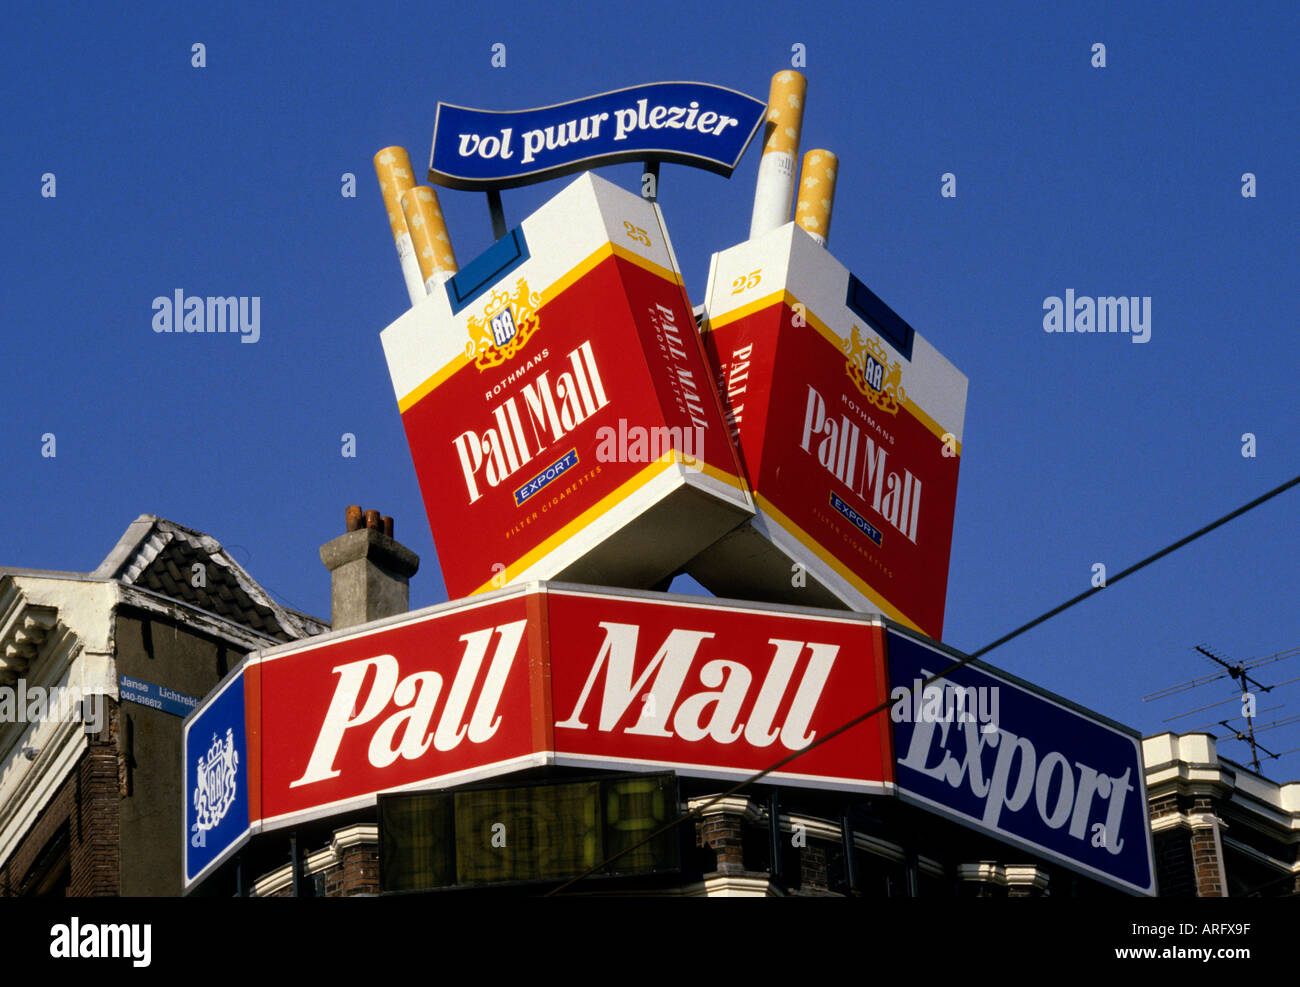 Amsterdam Pall Mall cigarettes Smoking Stock Photo